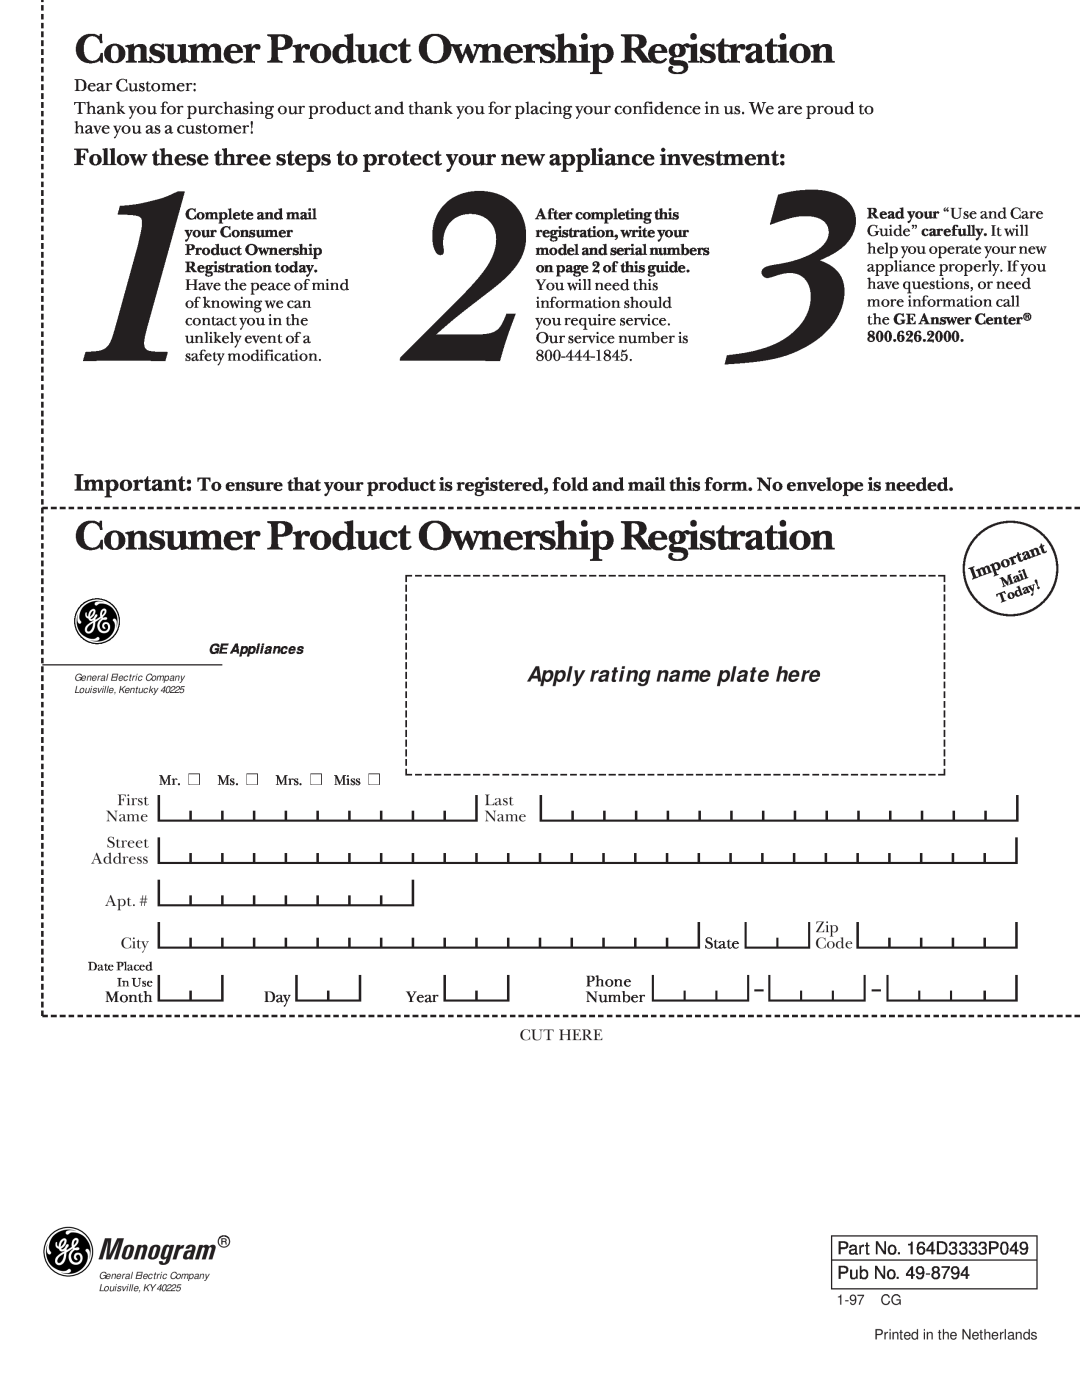 GE Monogram 36 Ceramic Cooktop manual Consumer Product Ownership Registration, Monogram, Apply rating name plate here 